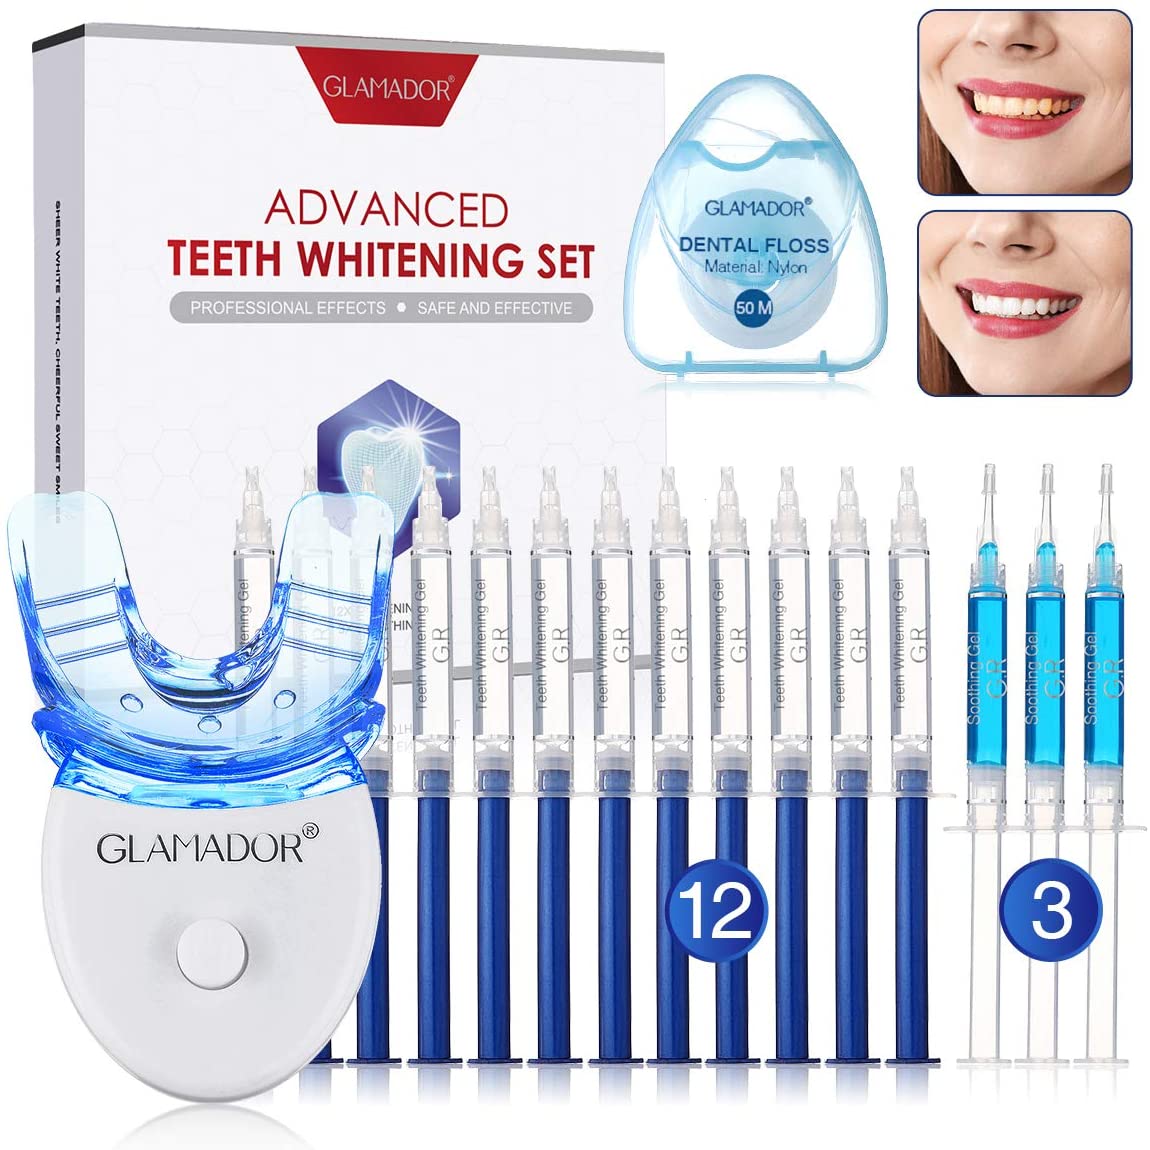 9. GLAMADOR Teeth Whitening Kit